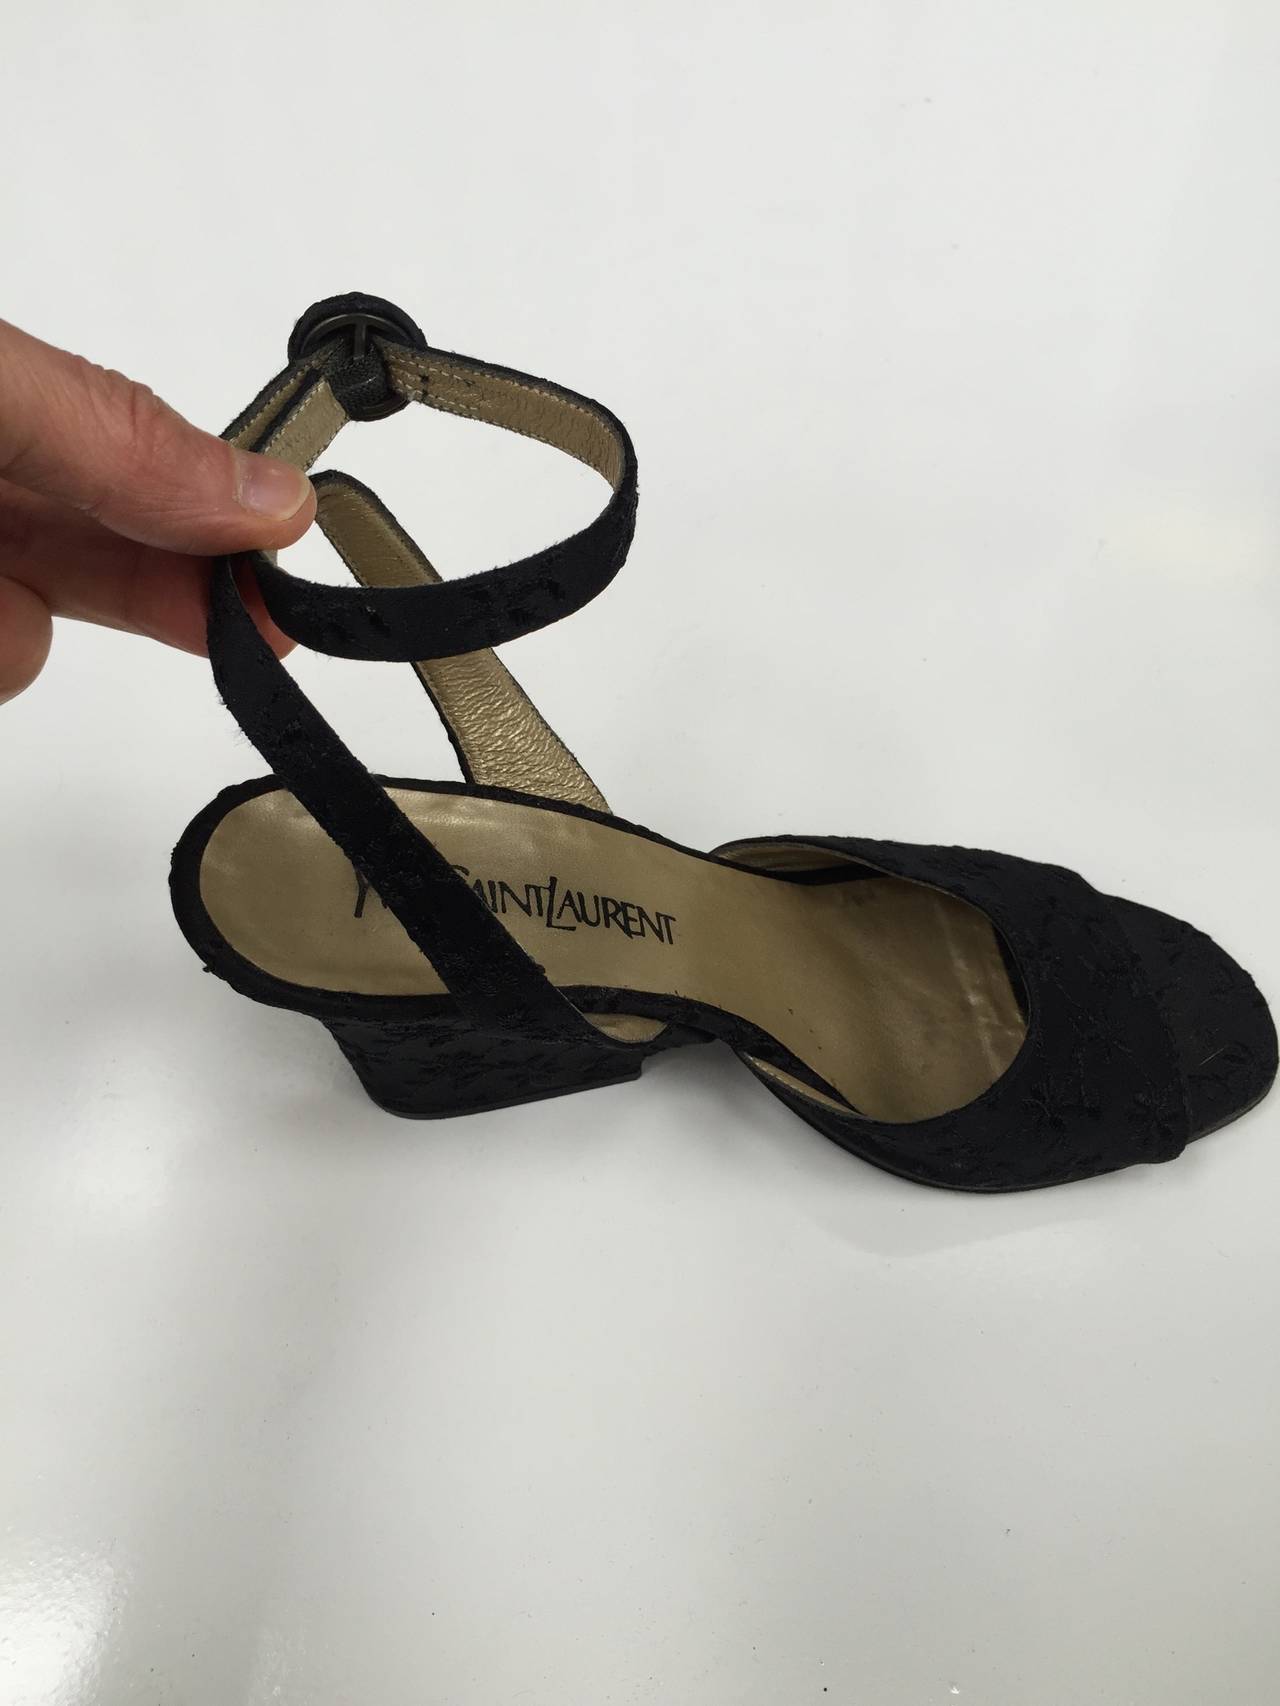 Yves Saint Laurent 1980s Black Ankle Strap Shoes Size 7.5 M. For Sale 1